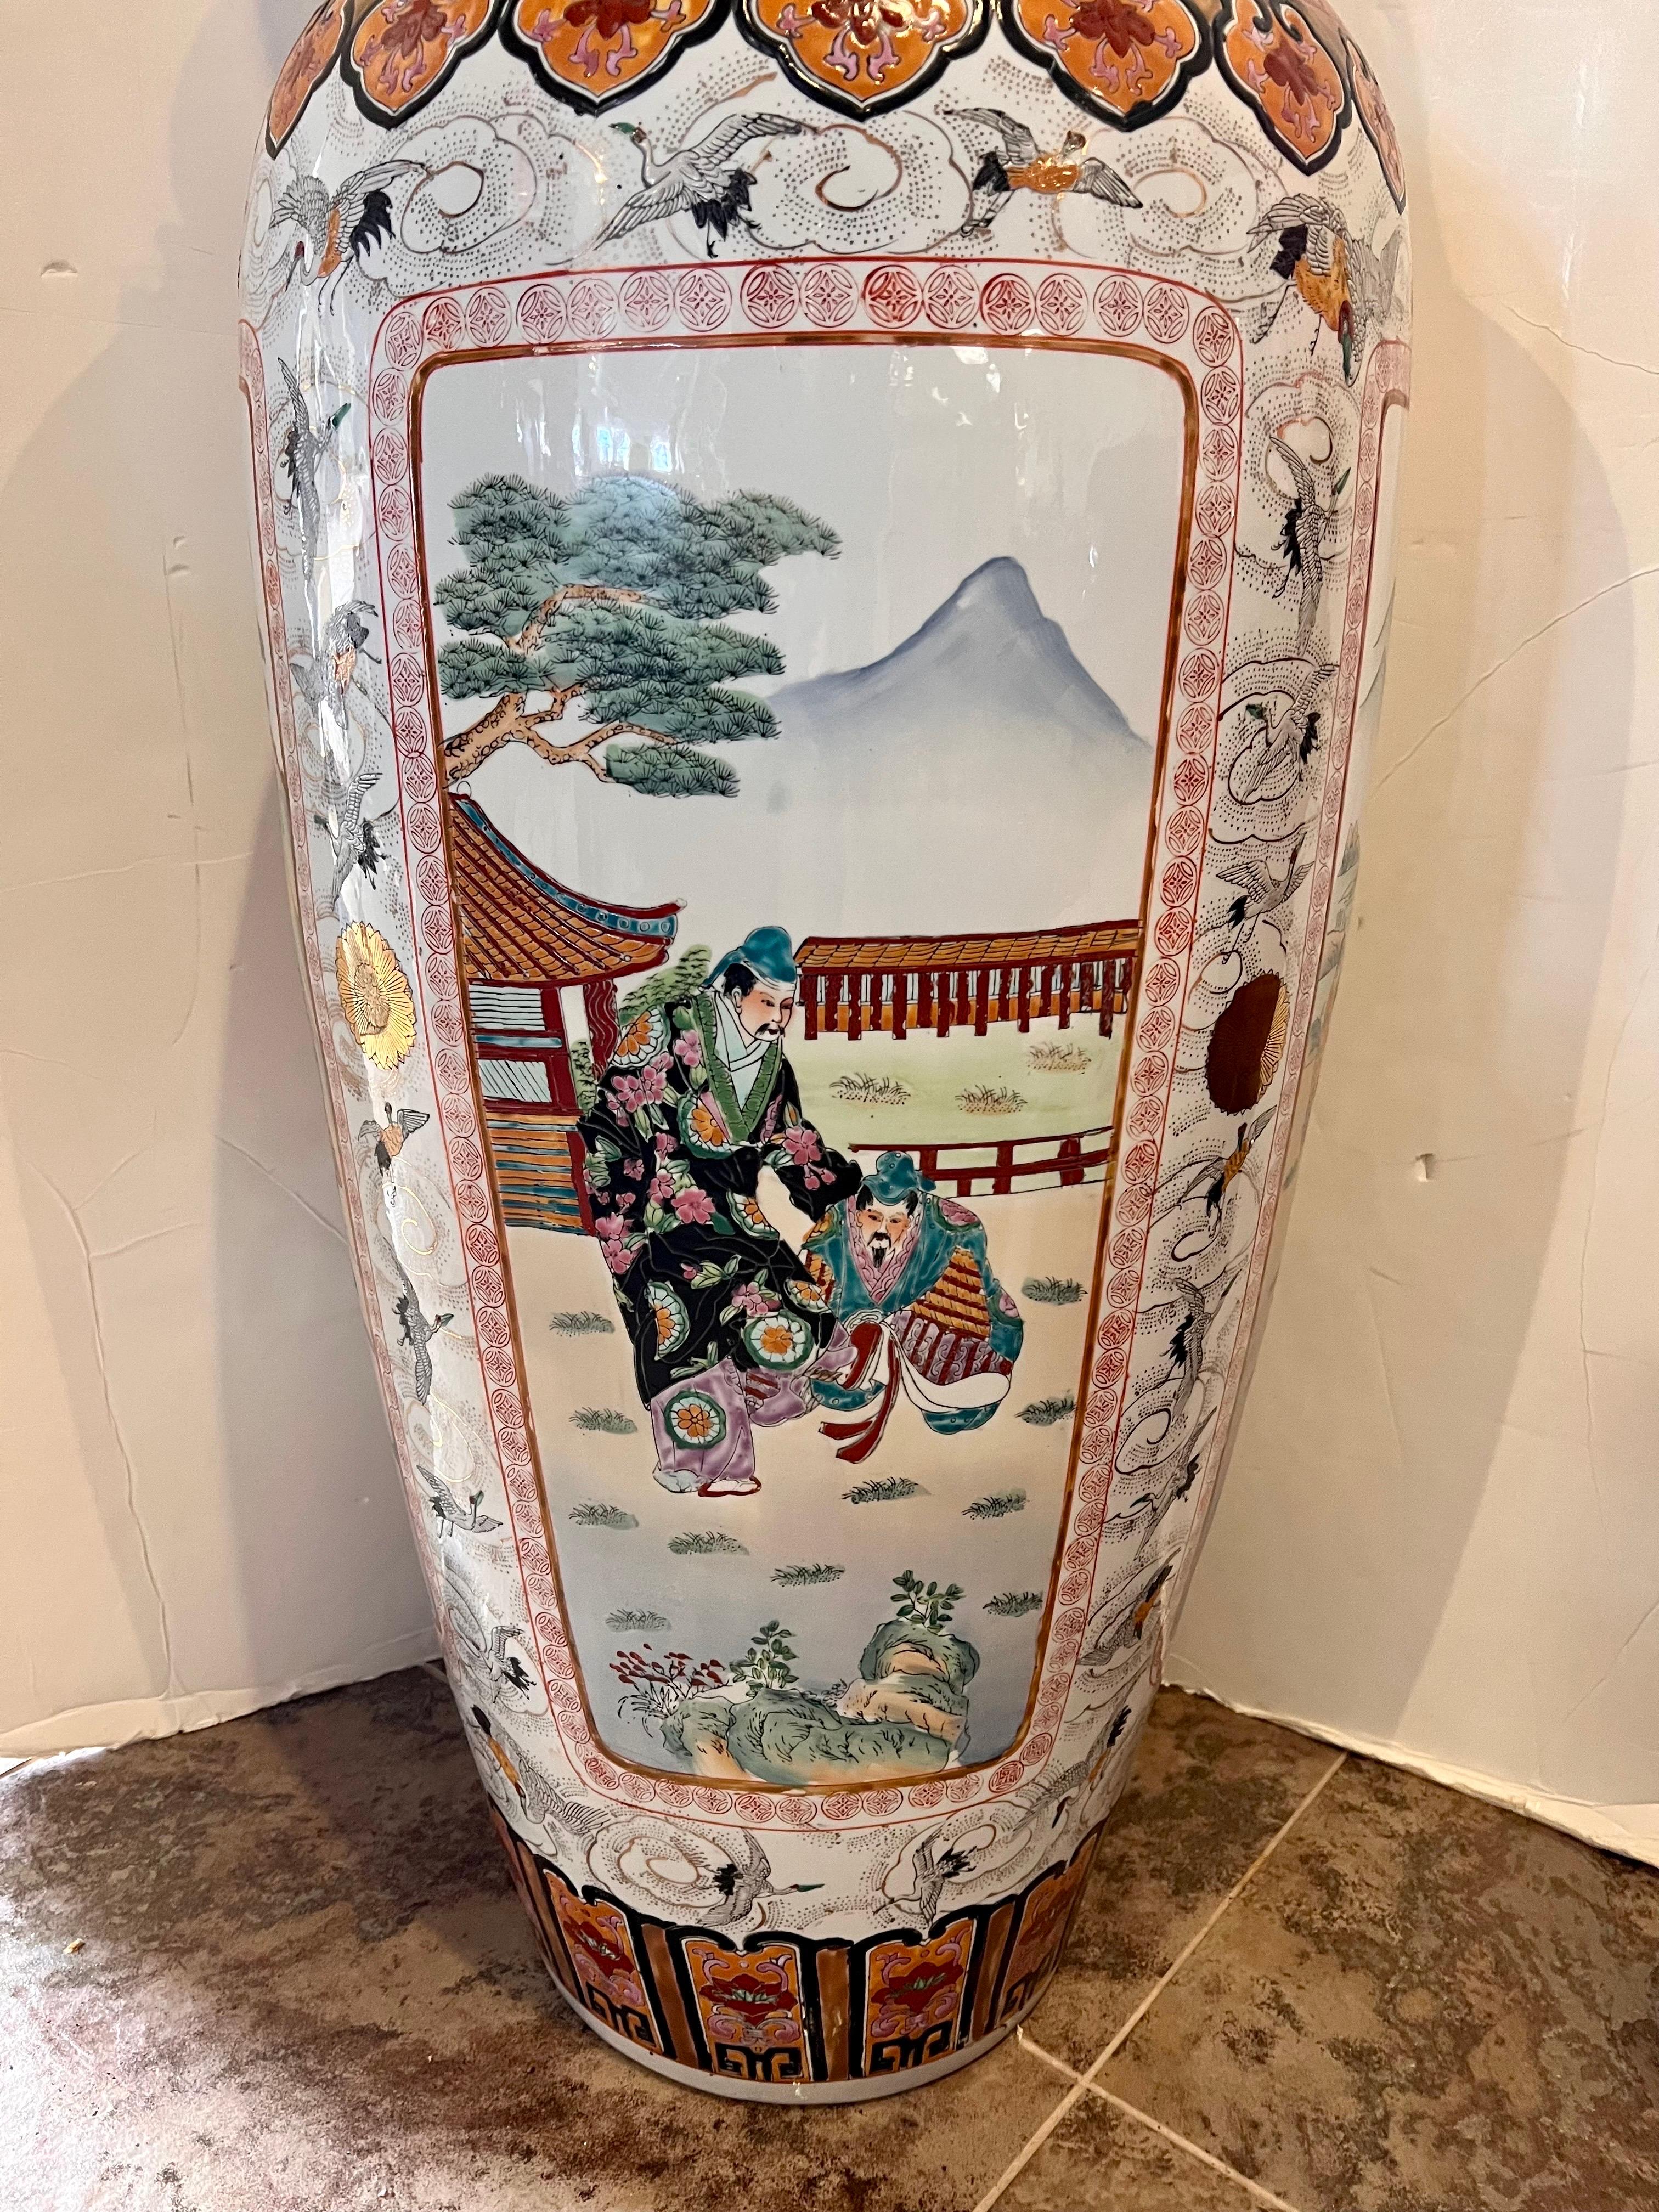 Extra Tall Palace Sized Extra Large Colorful Chinese Porcelain Vase Urn 2